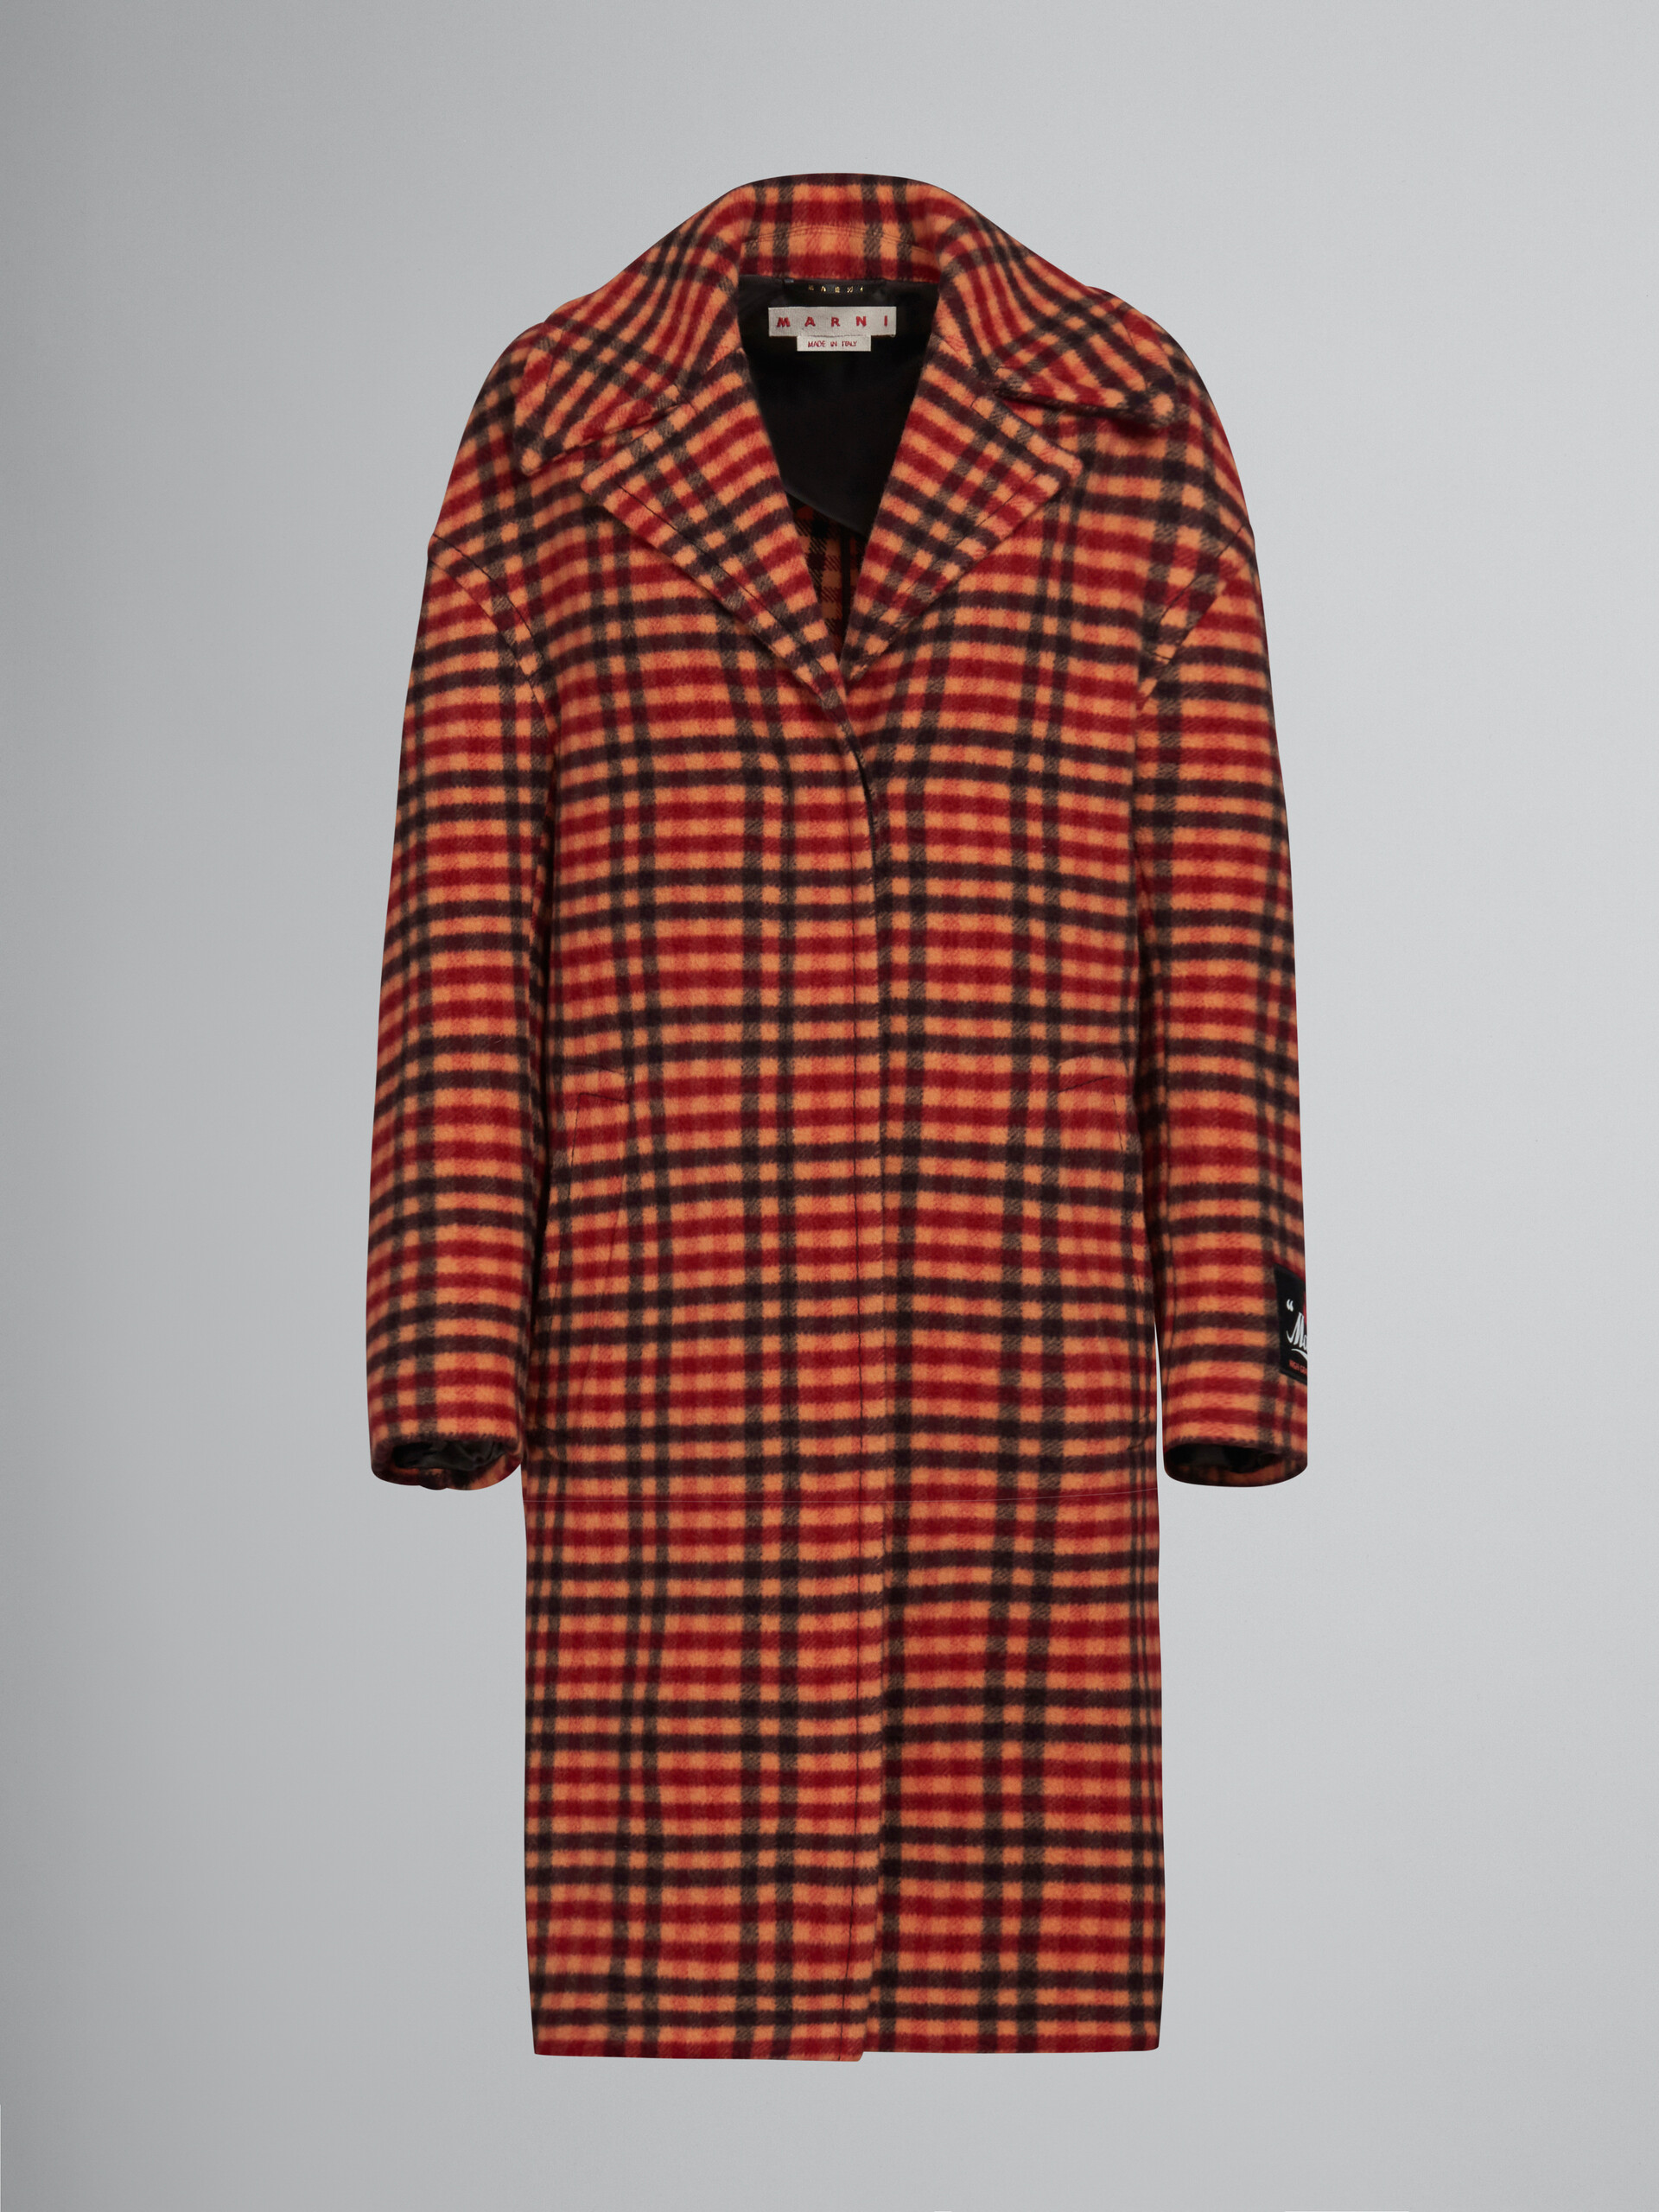 Orange wool felt coat with Wavy Check pattern - Coat - Image 1